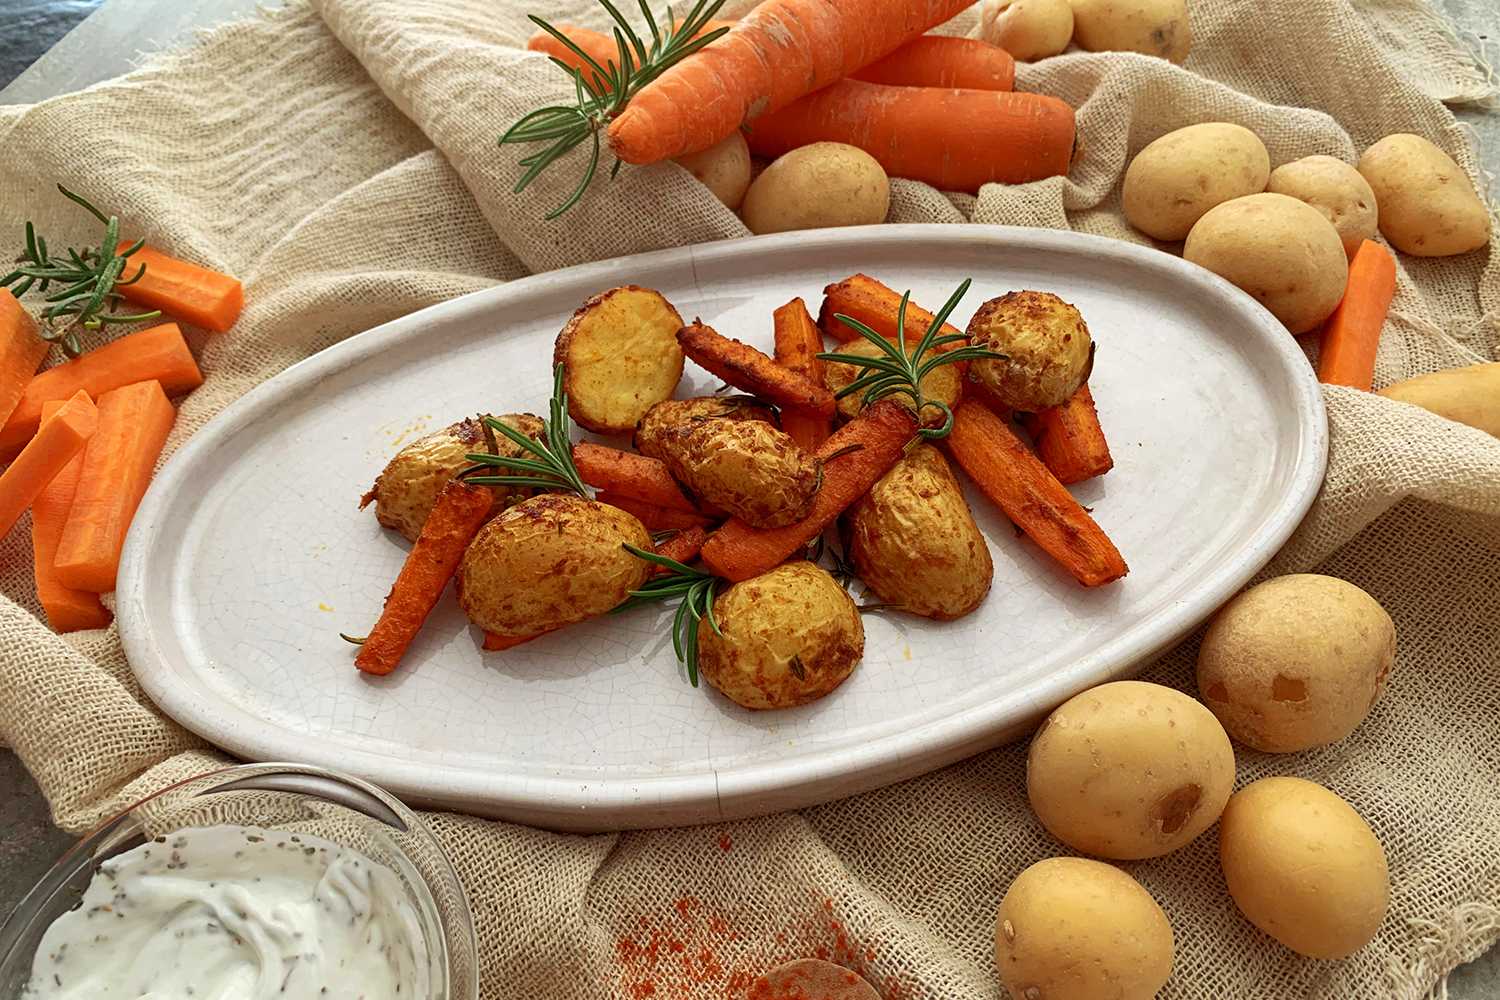 Instant Pot Potatoes and Carrots